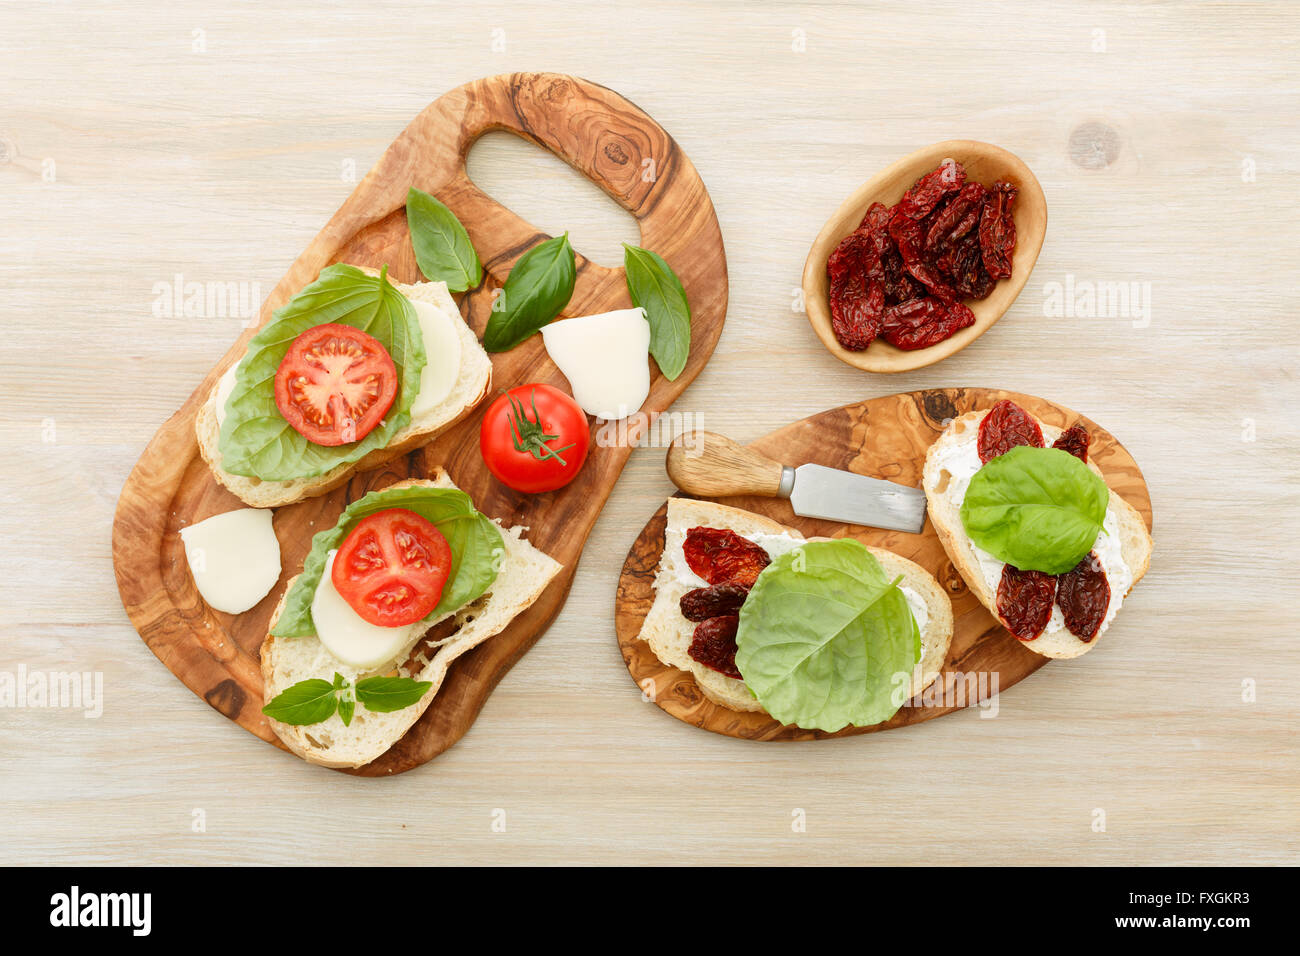 Des sandwichs ouverts de ciabatta, des tomates séchées, de la crème de fromage et de basilic feuille de laitue. Antipasti Banque D'Images